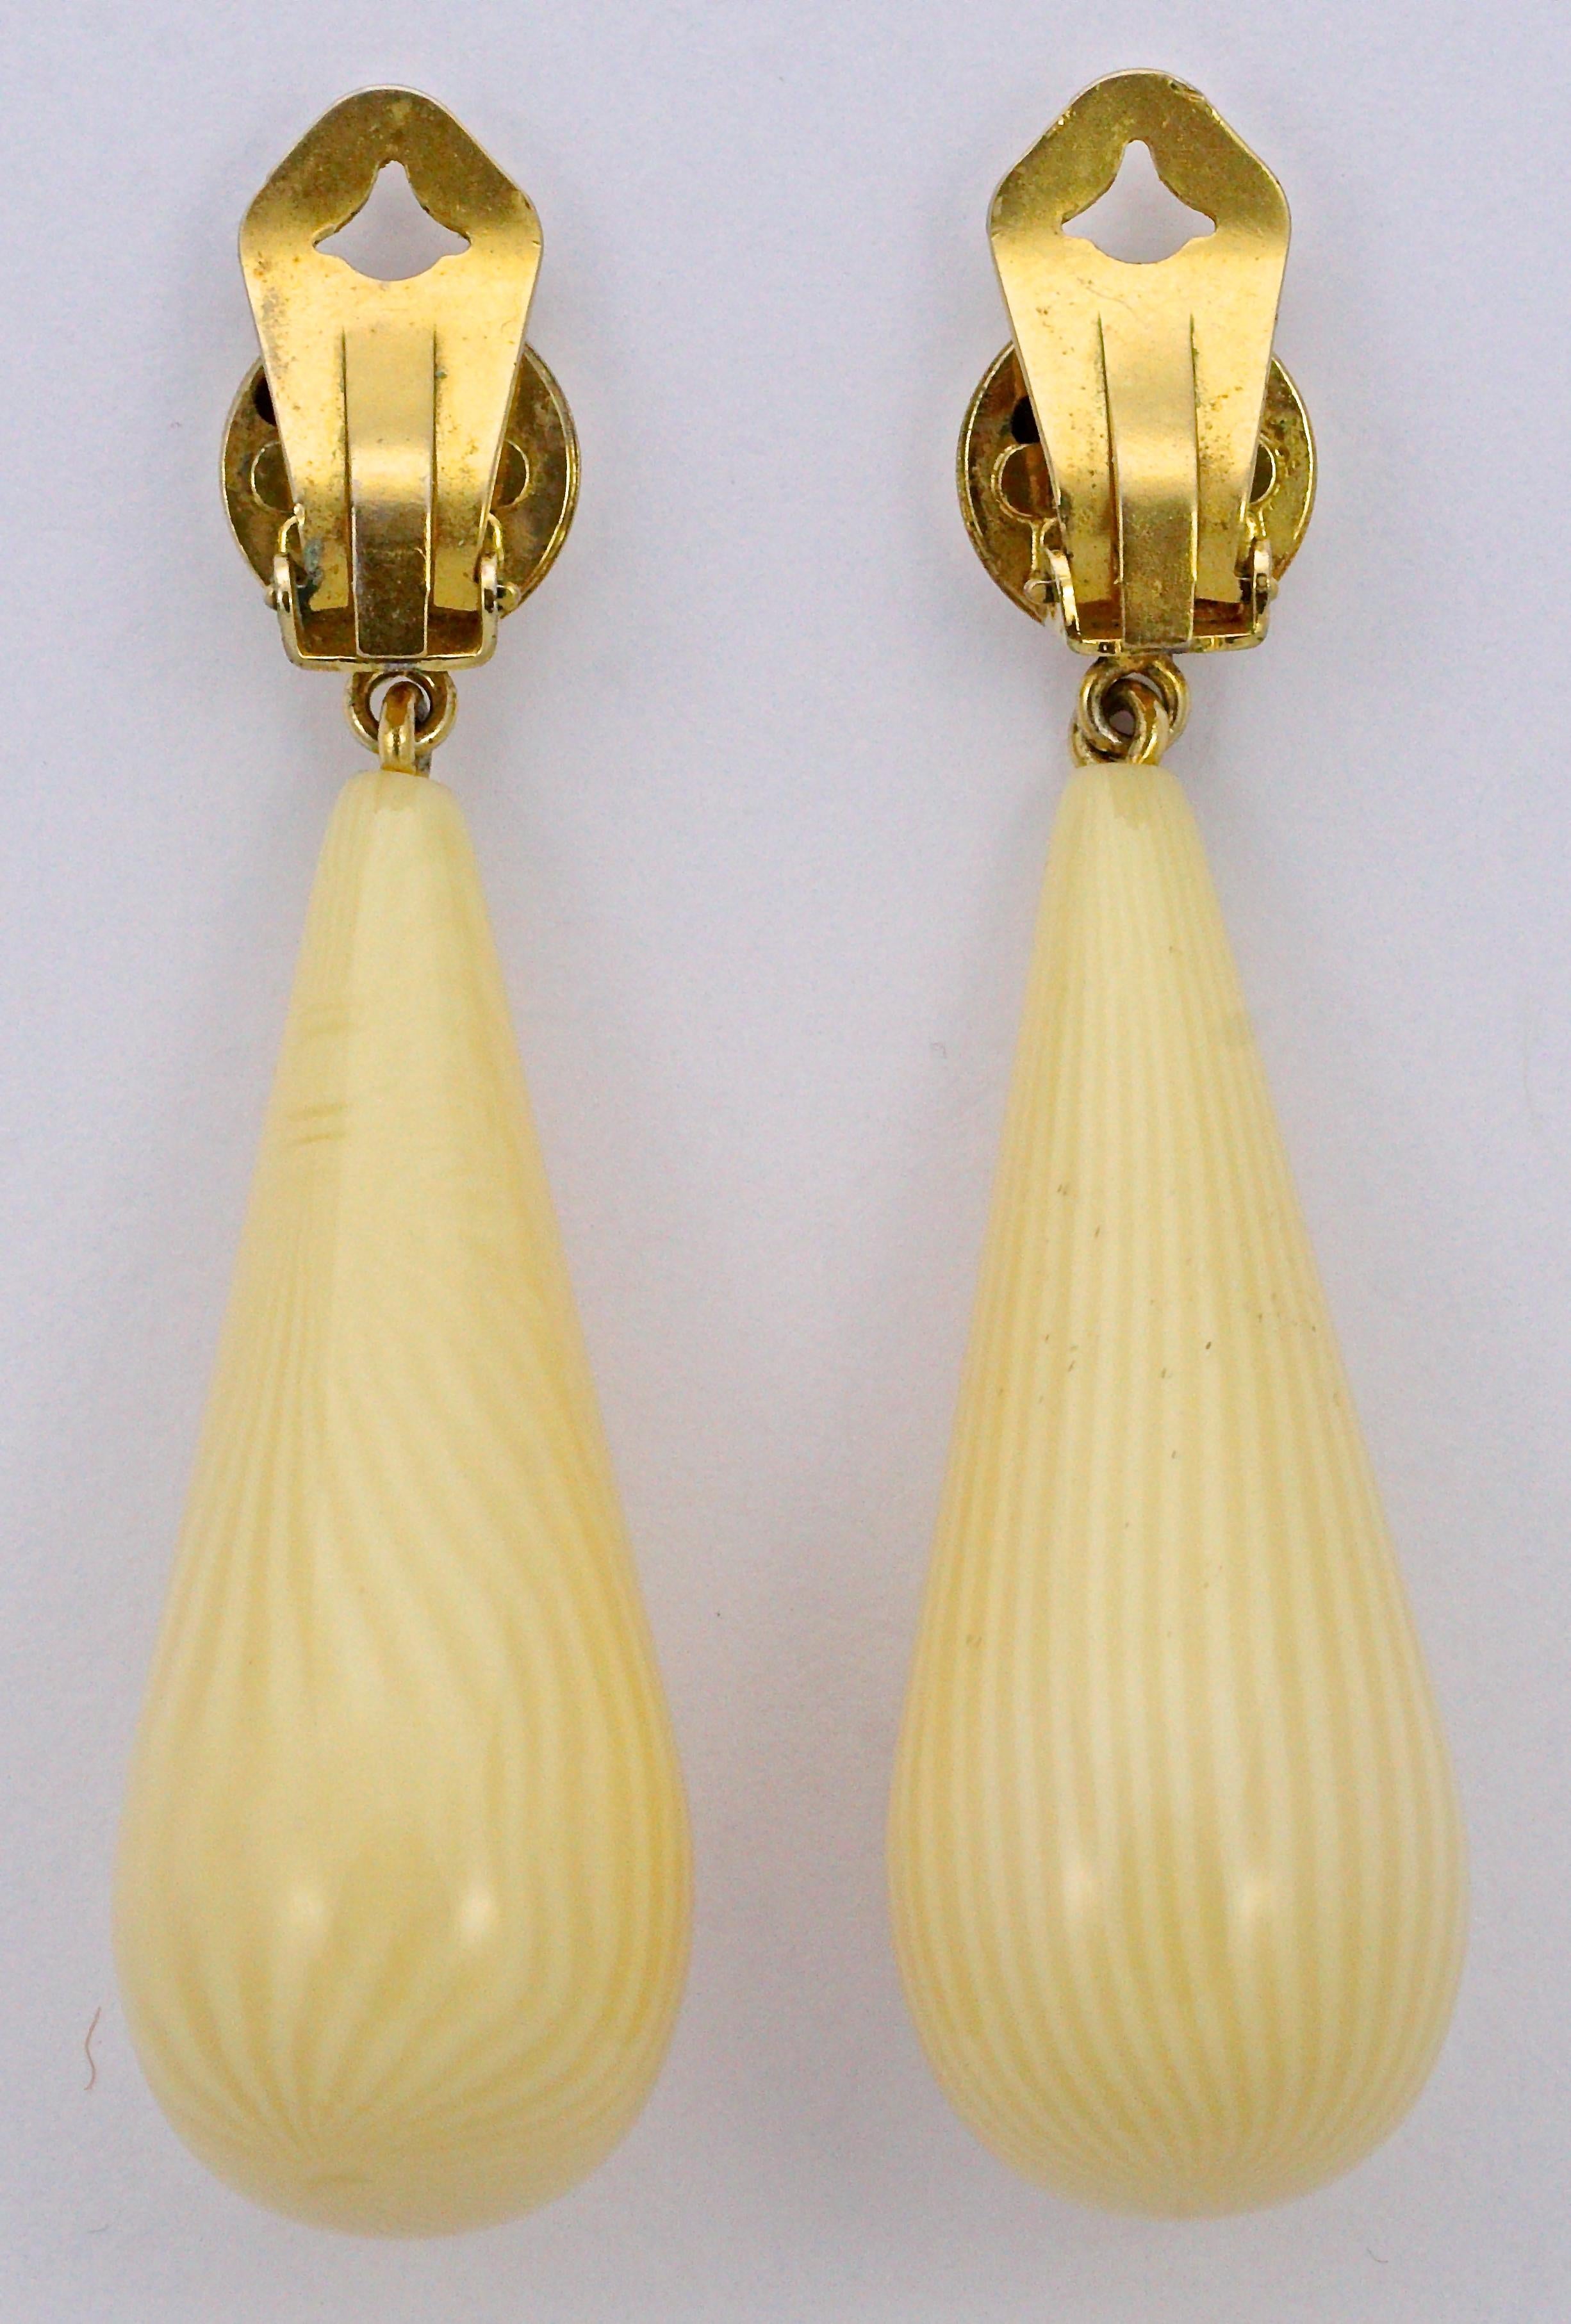 Schöne Vintage Pellini Clip auf Gold Ton Ohrringe, mit langen gestreiften Creme Harz Träne Tropfen. Sie sind in sehr gutem Zustand, mit ein paar Flecken. Messlänge 6,7 cm / 2,64 Zoll.

Dies ist ein hochwertiges Paar Pellini Statement-Ohrringe,